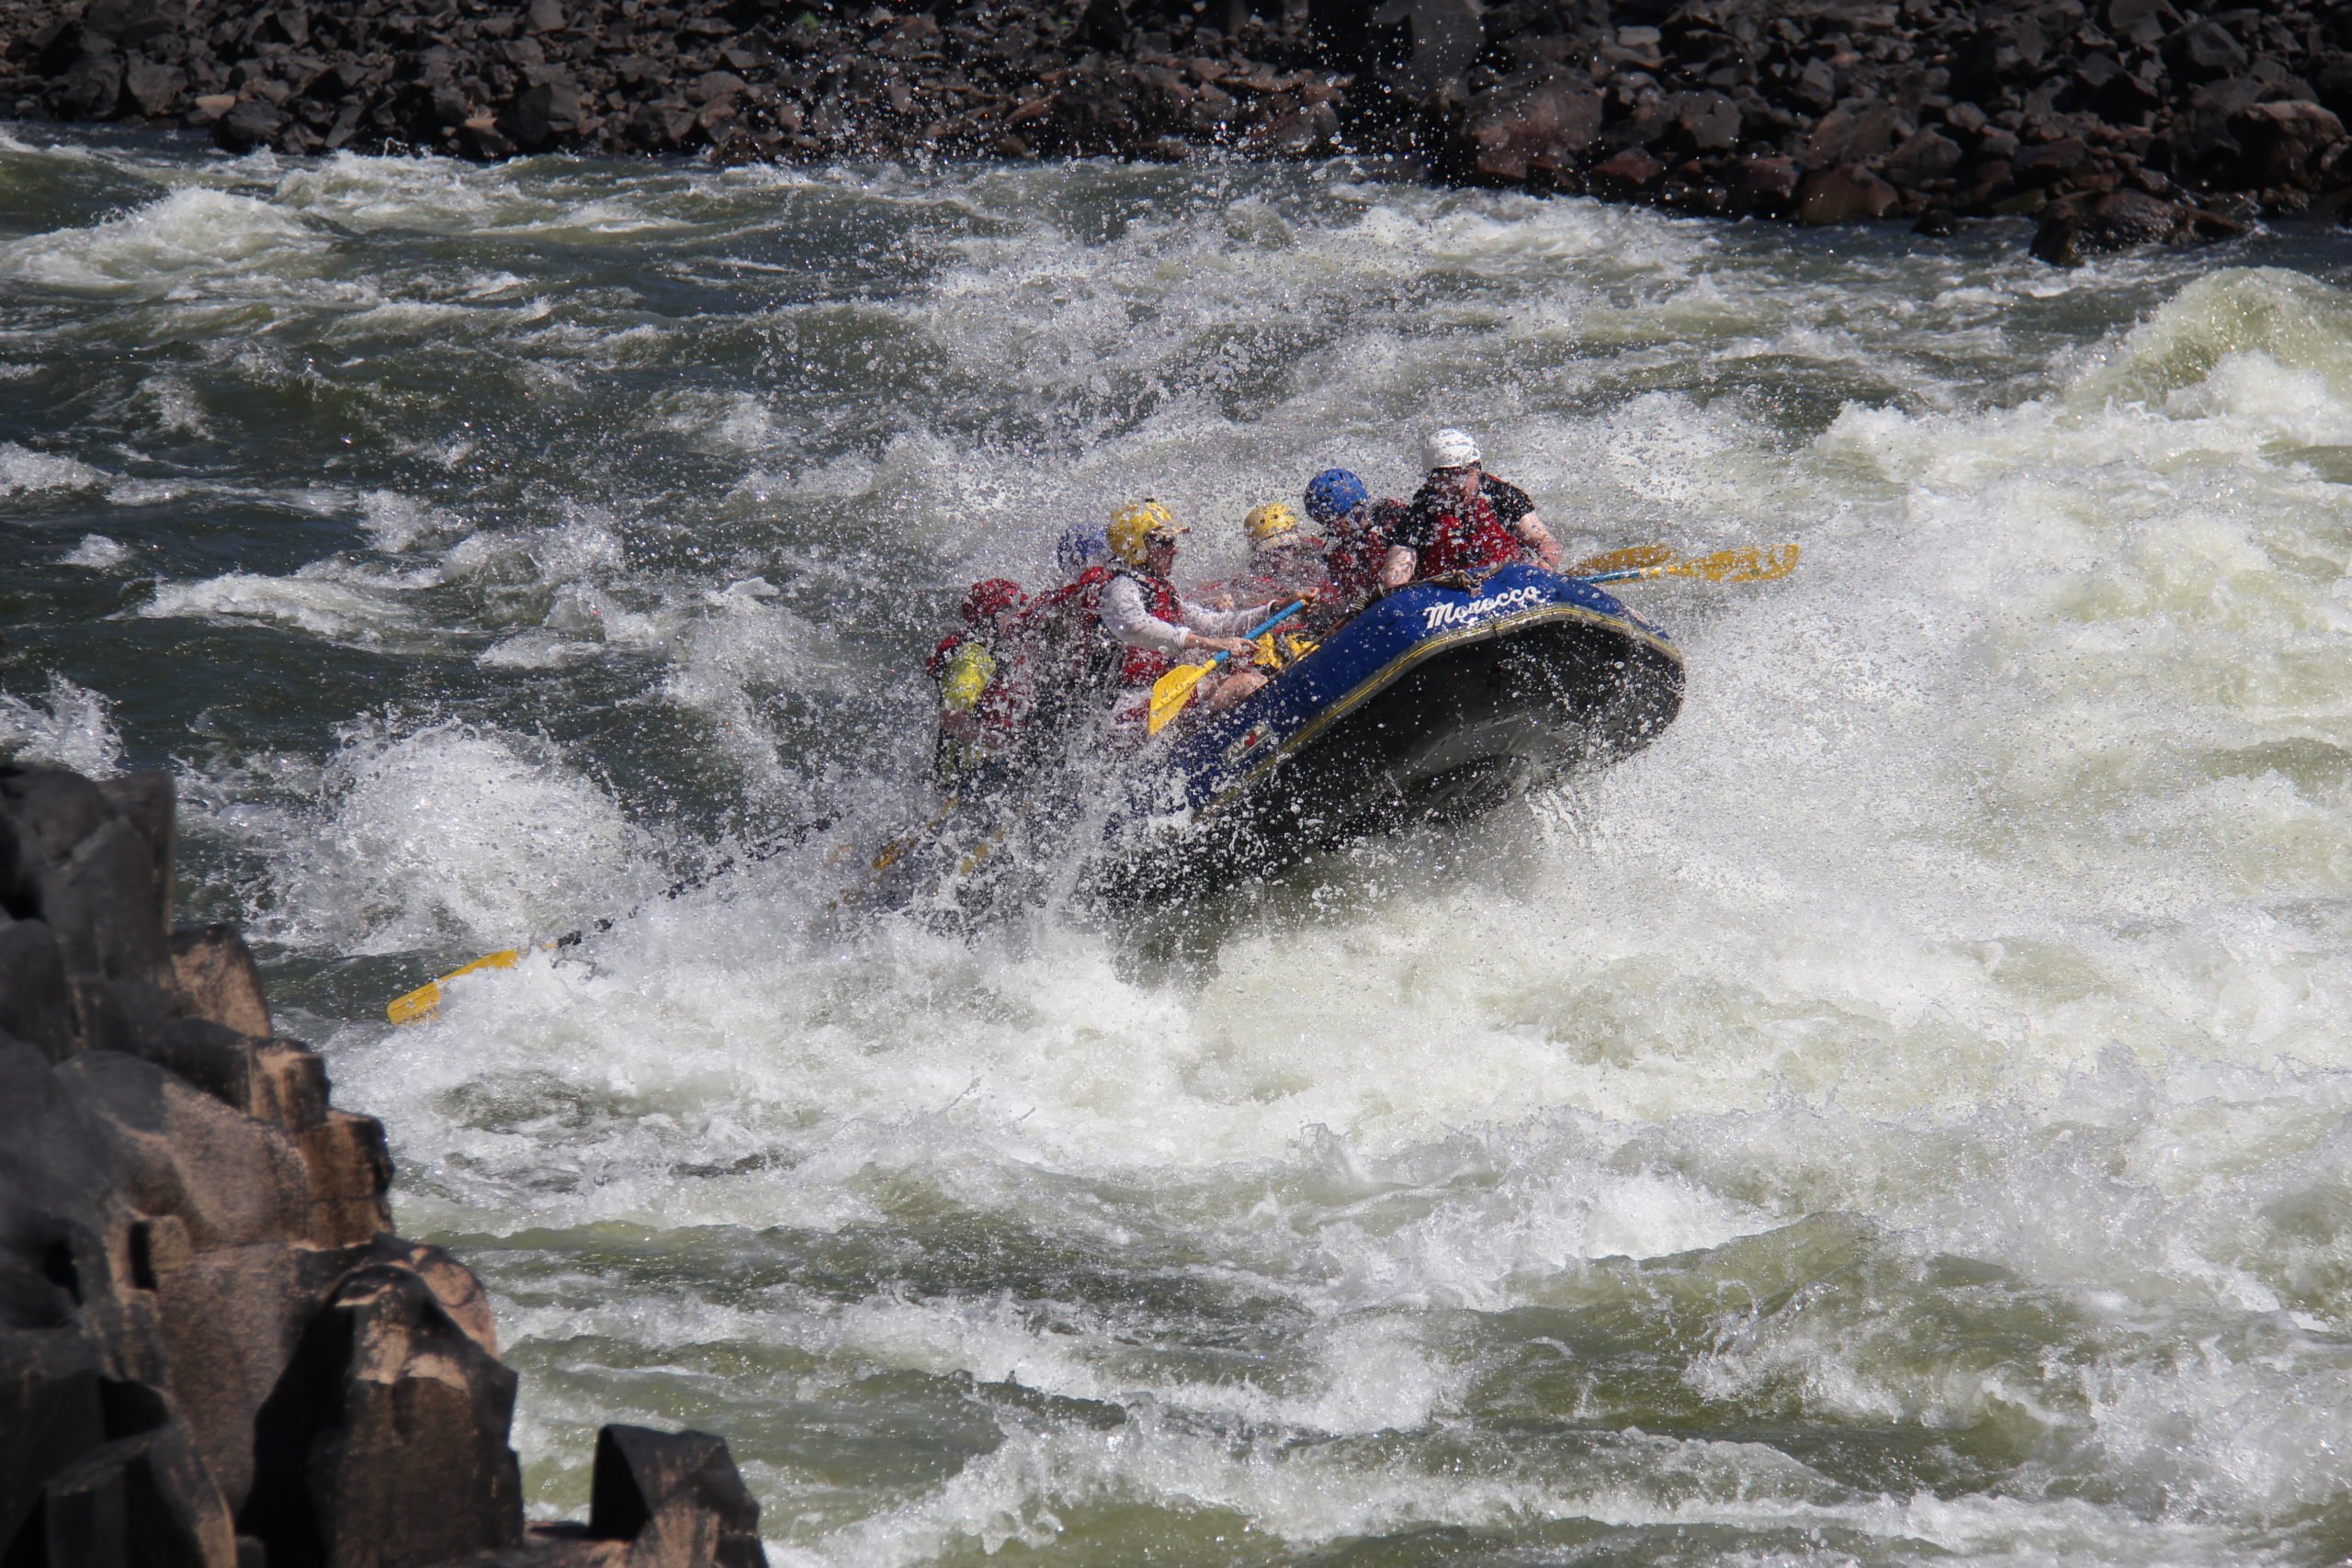 The world class rapids on the Zambezi